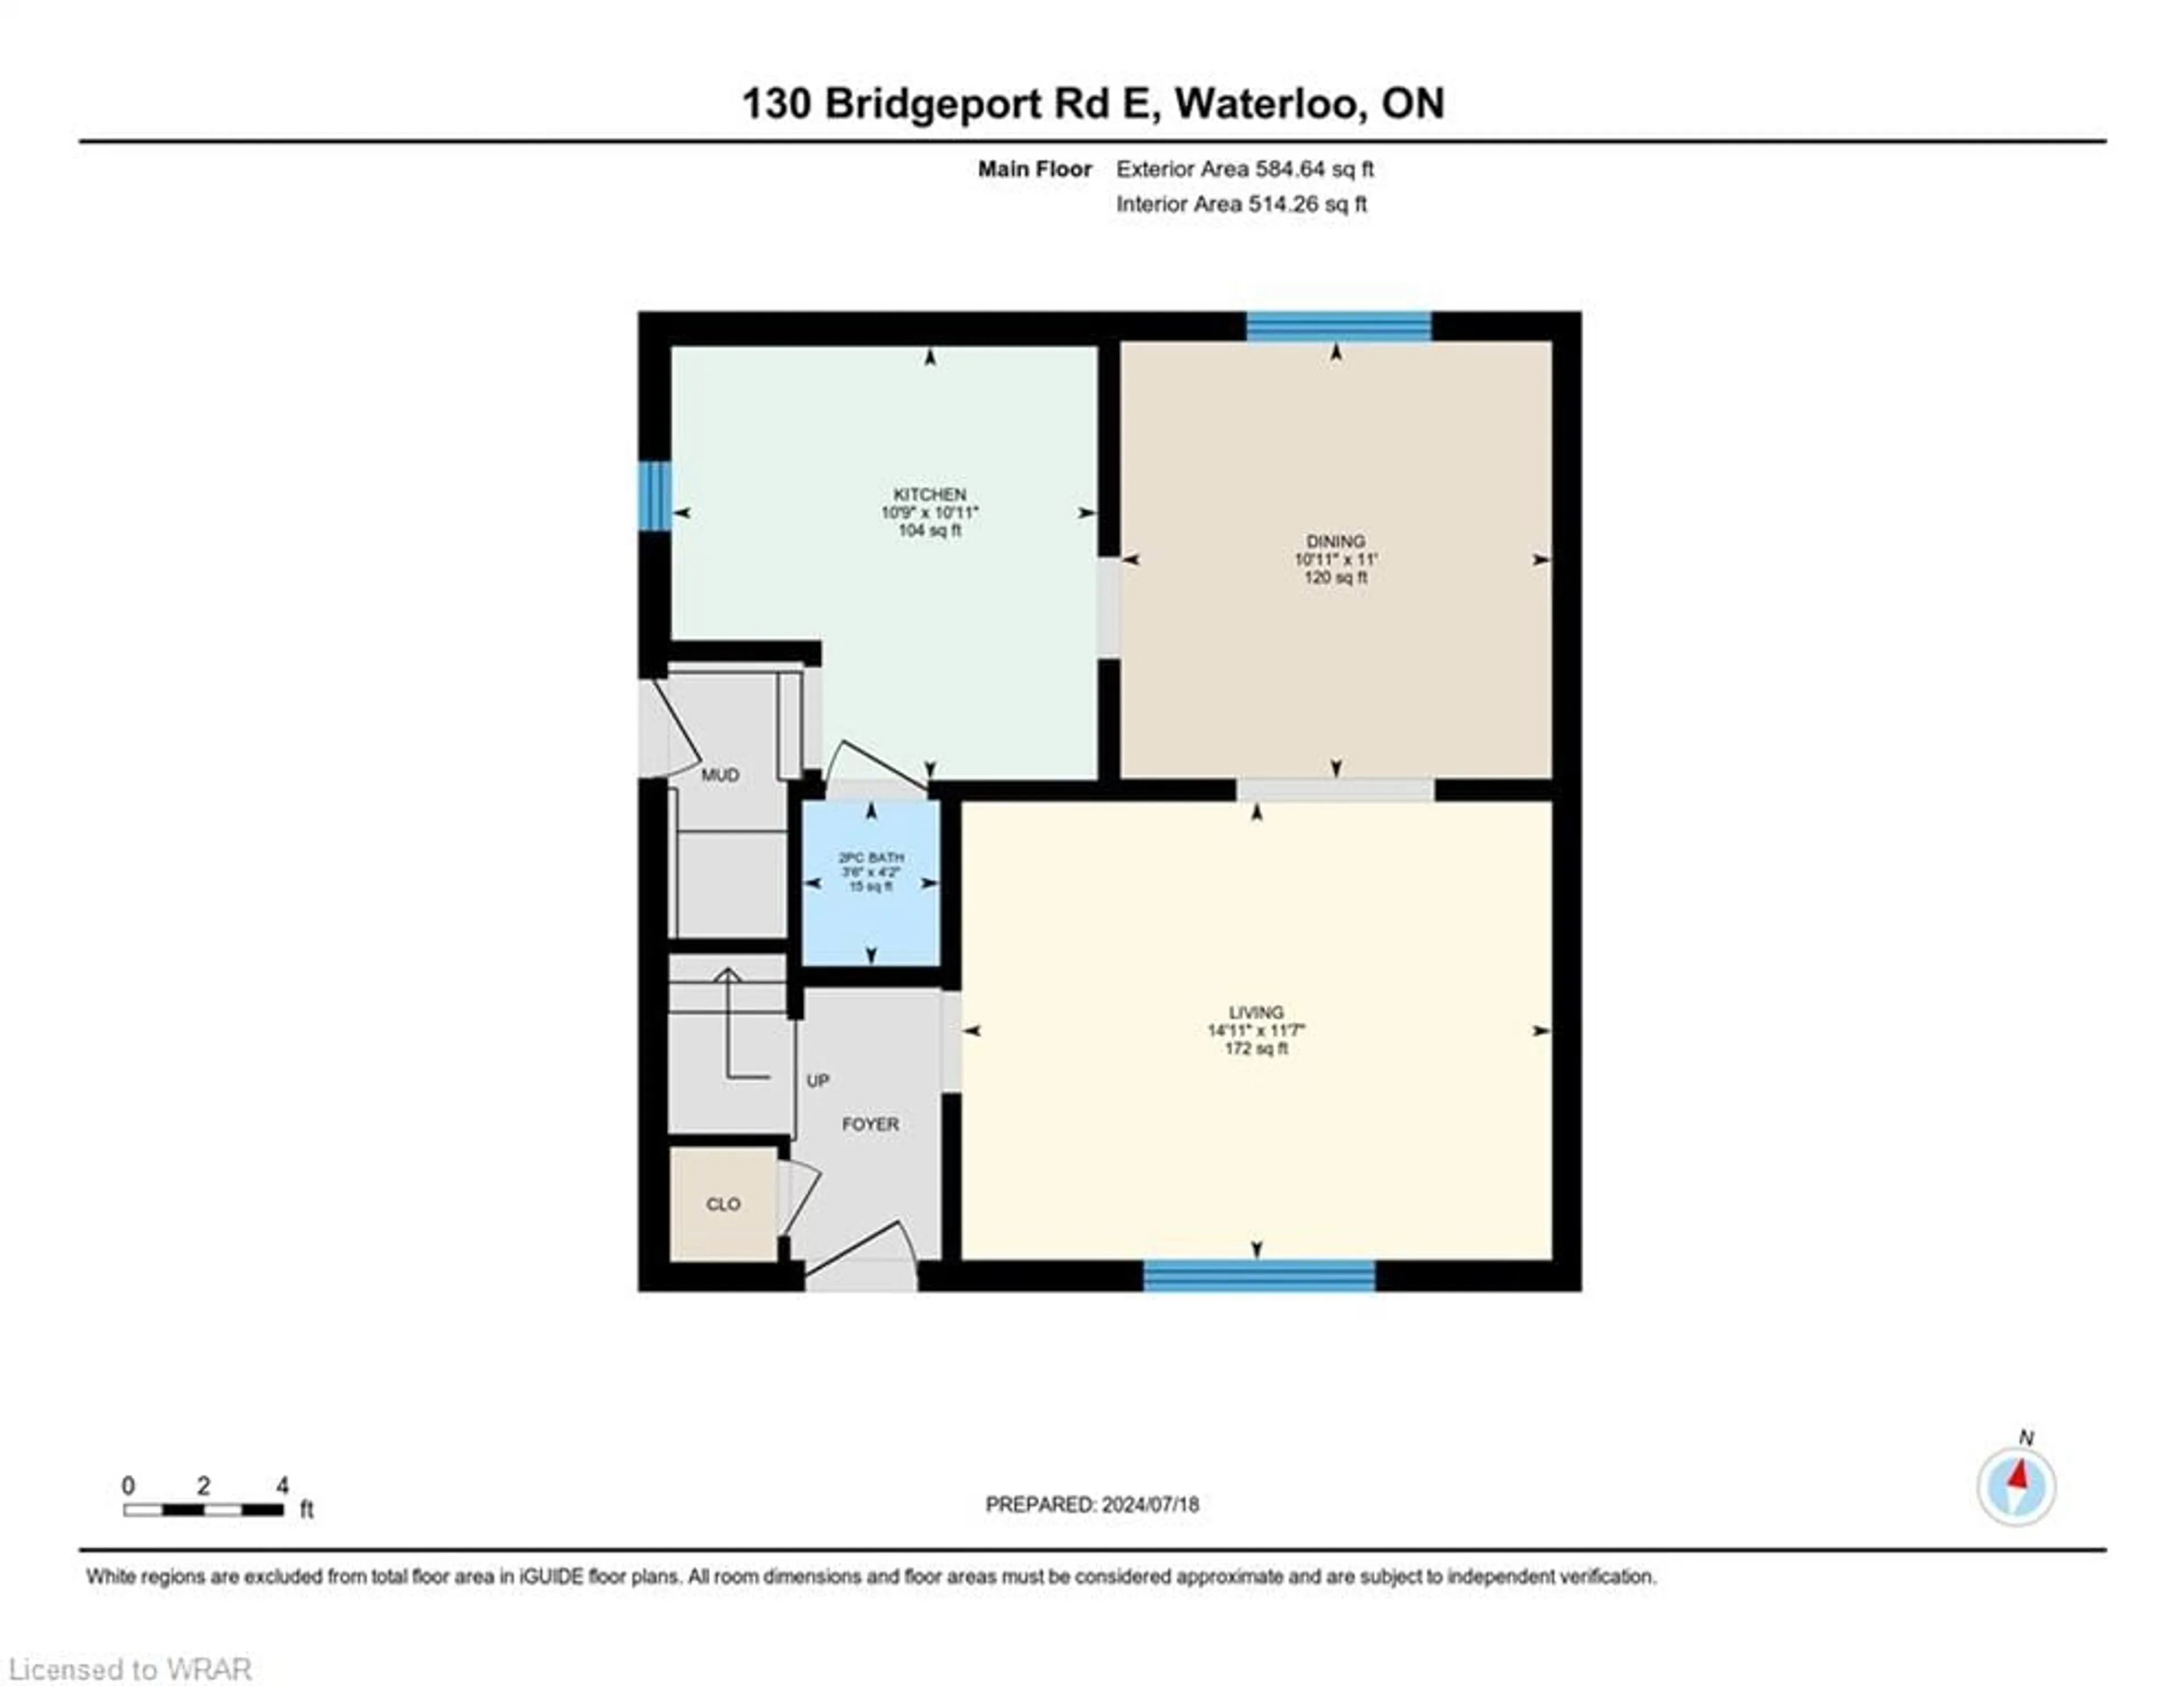 Floor plan for 130 Bridgeport Rd, Waterloo Ontario N2J 2K4